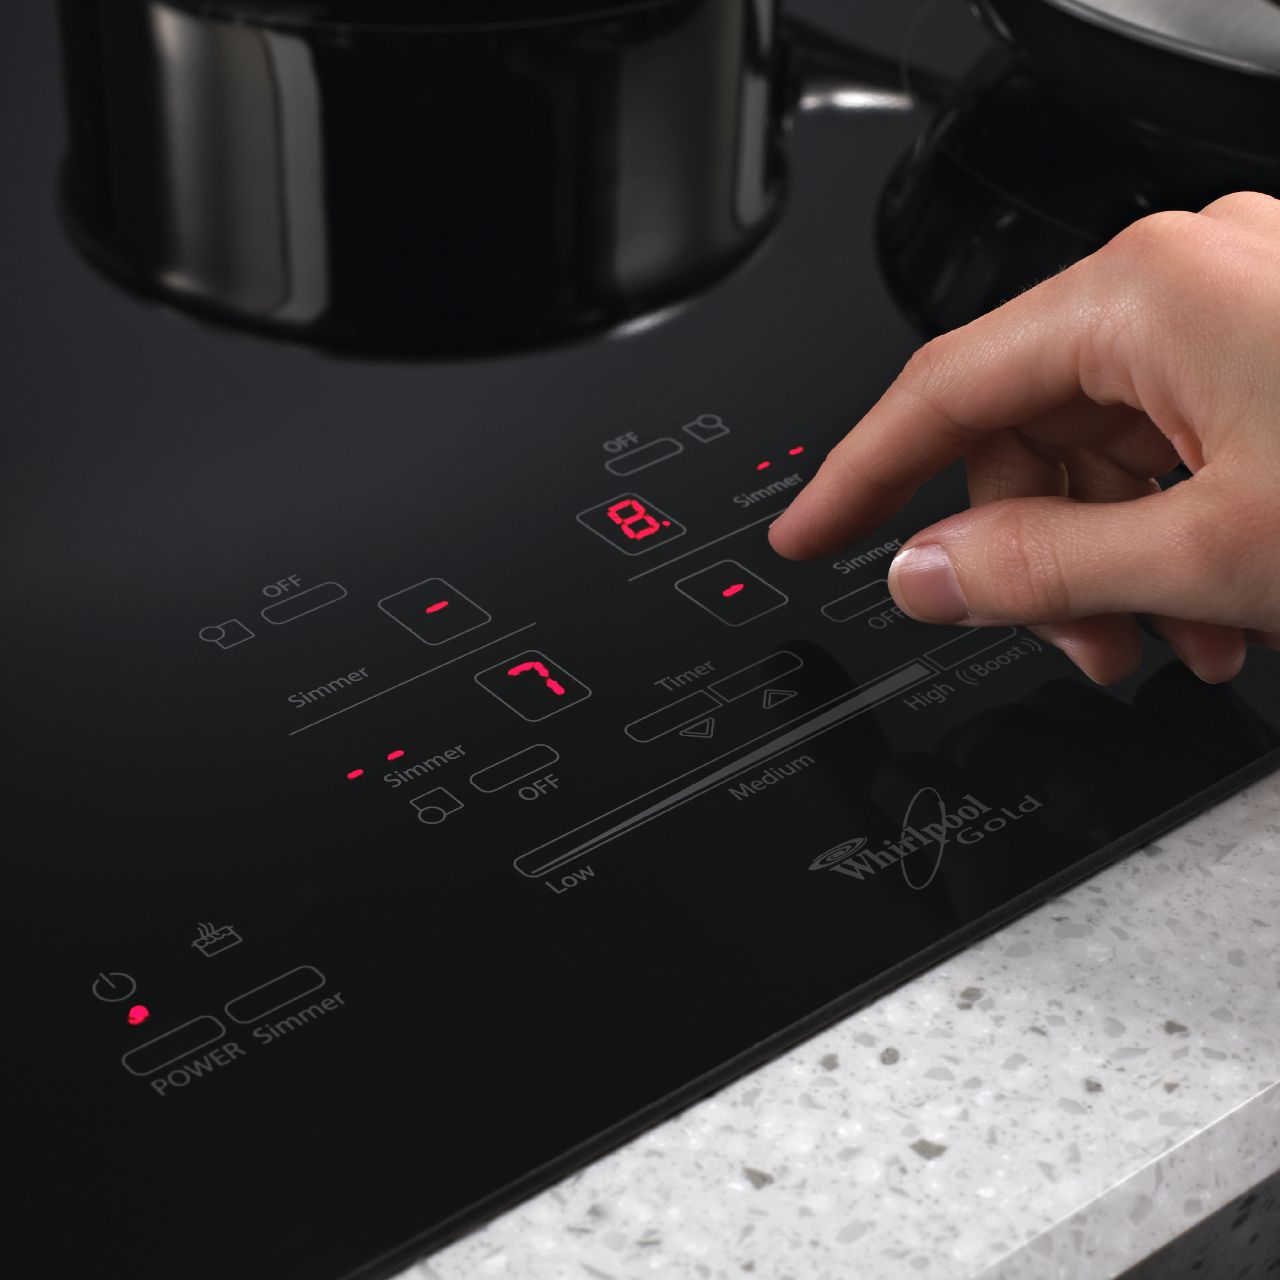 Controls Stoves Ovens Electric cooktops Control temperature oven Teka HI535ME 